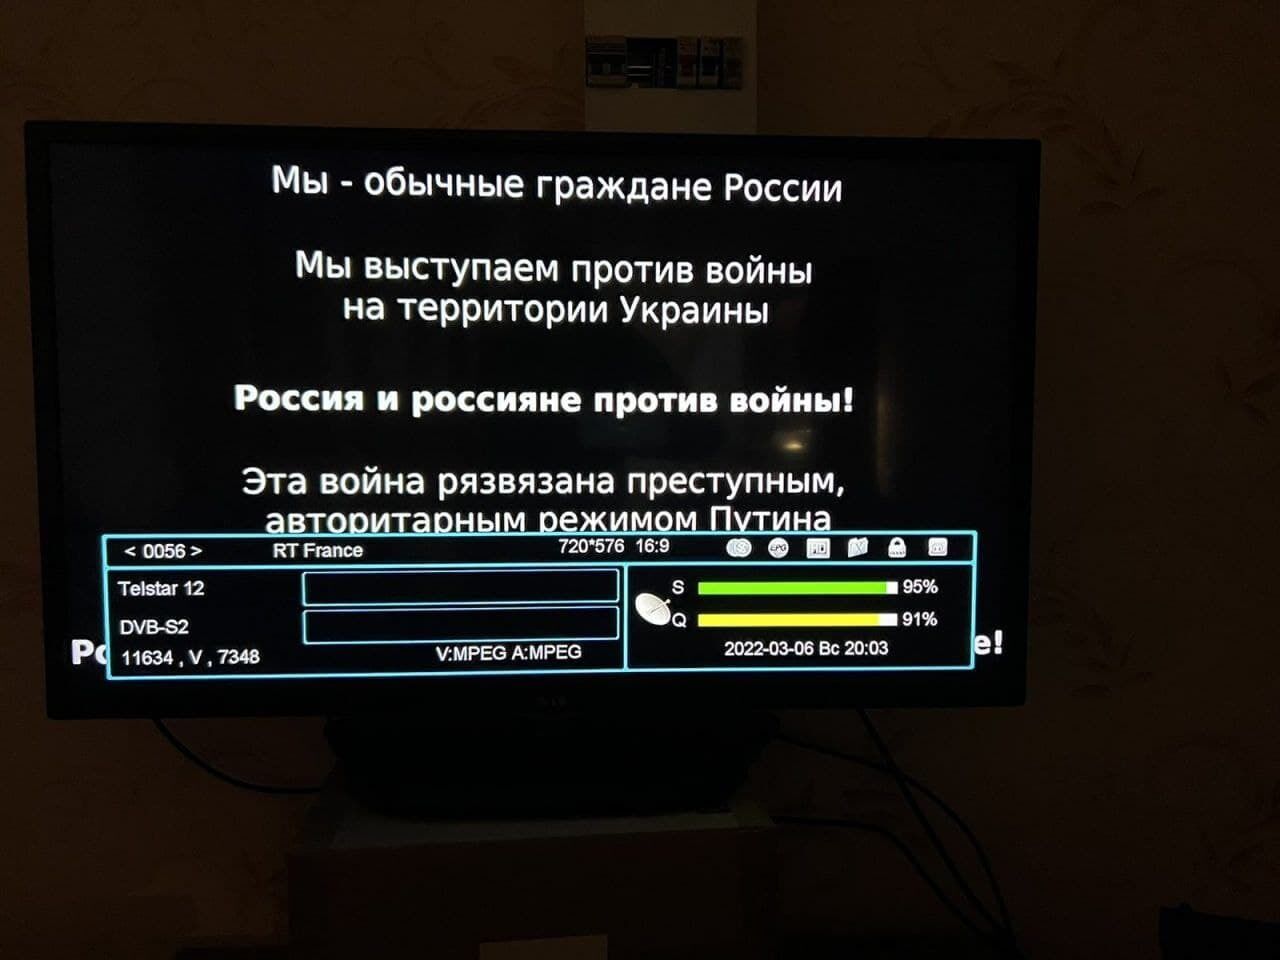 "Эта война развязана преступным режимом": на видеосервисах в РФ начали транслировать антивоенную агитацию. Фото и видео